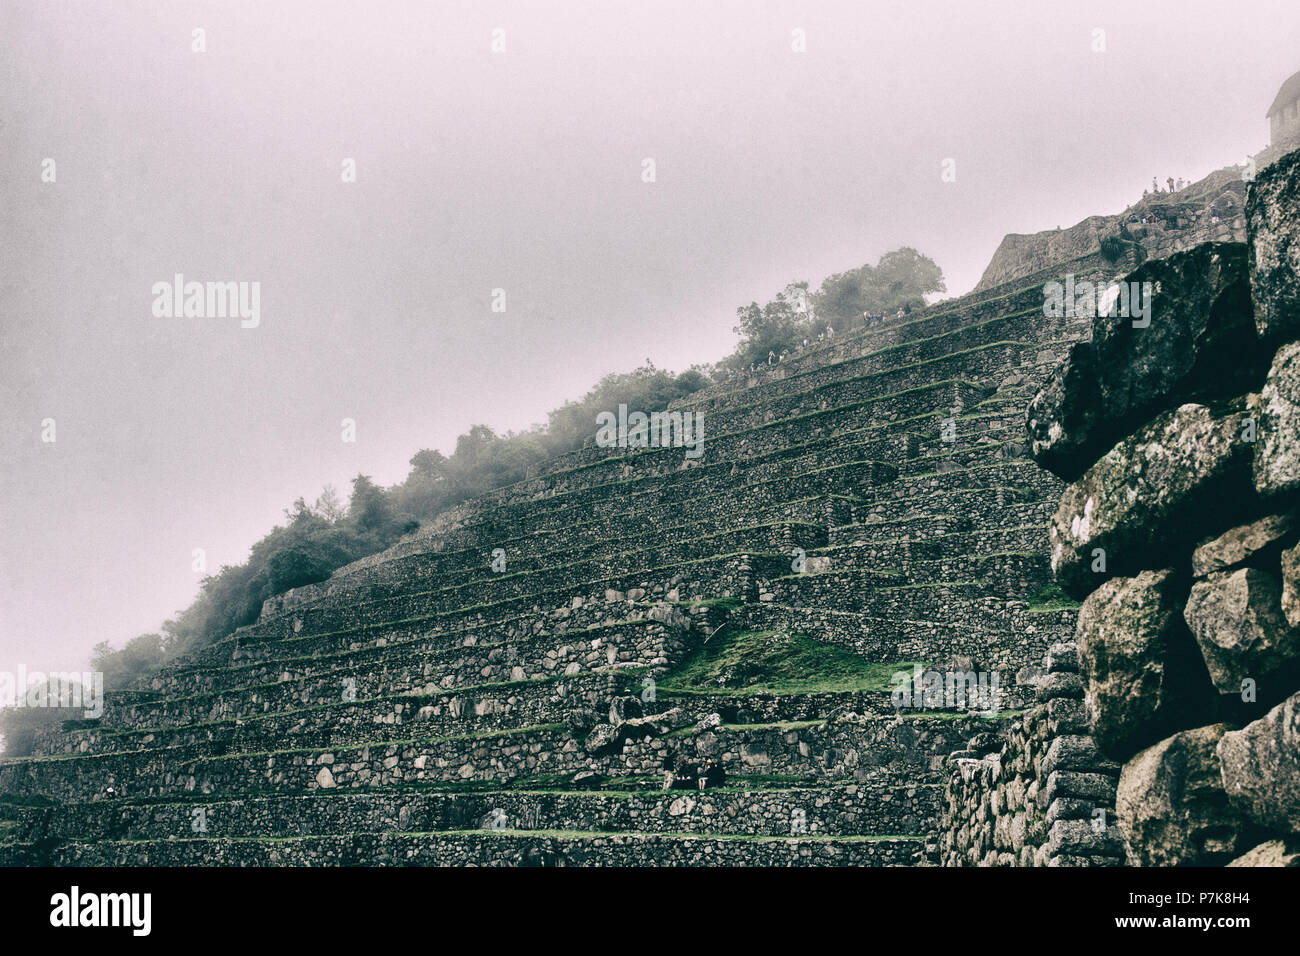 Bellissime foto di sfondo di Inca agricoltura terrazze in pietra con la nebbia. Inca Trail. Il Perù. N. persone. Foto Stock